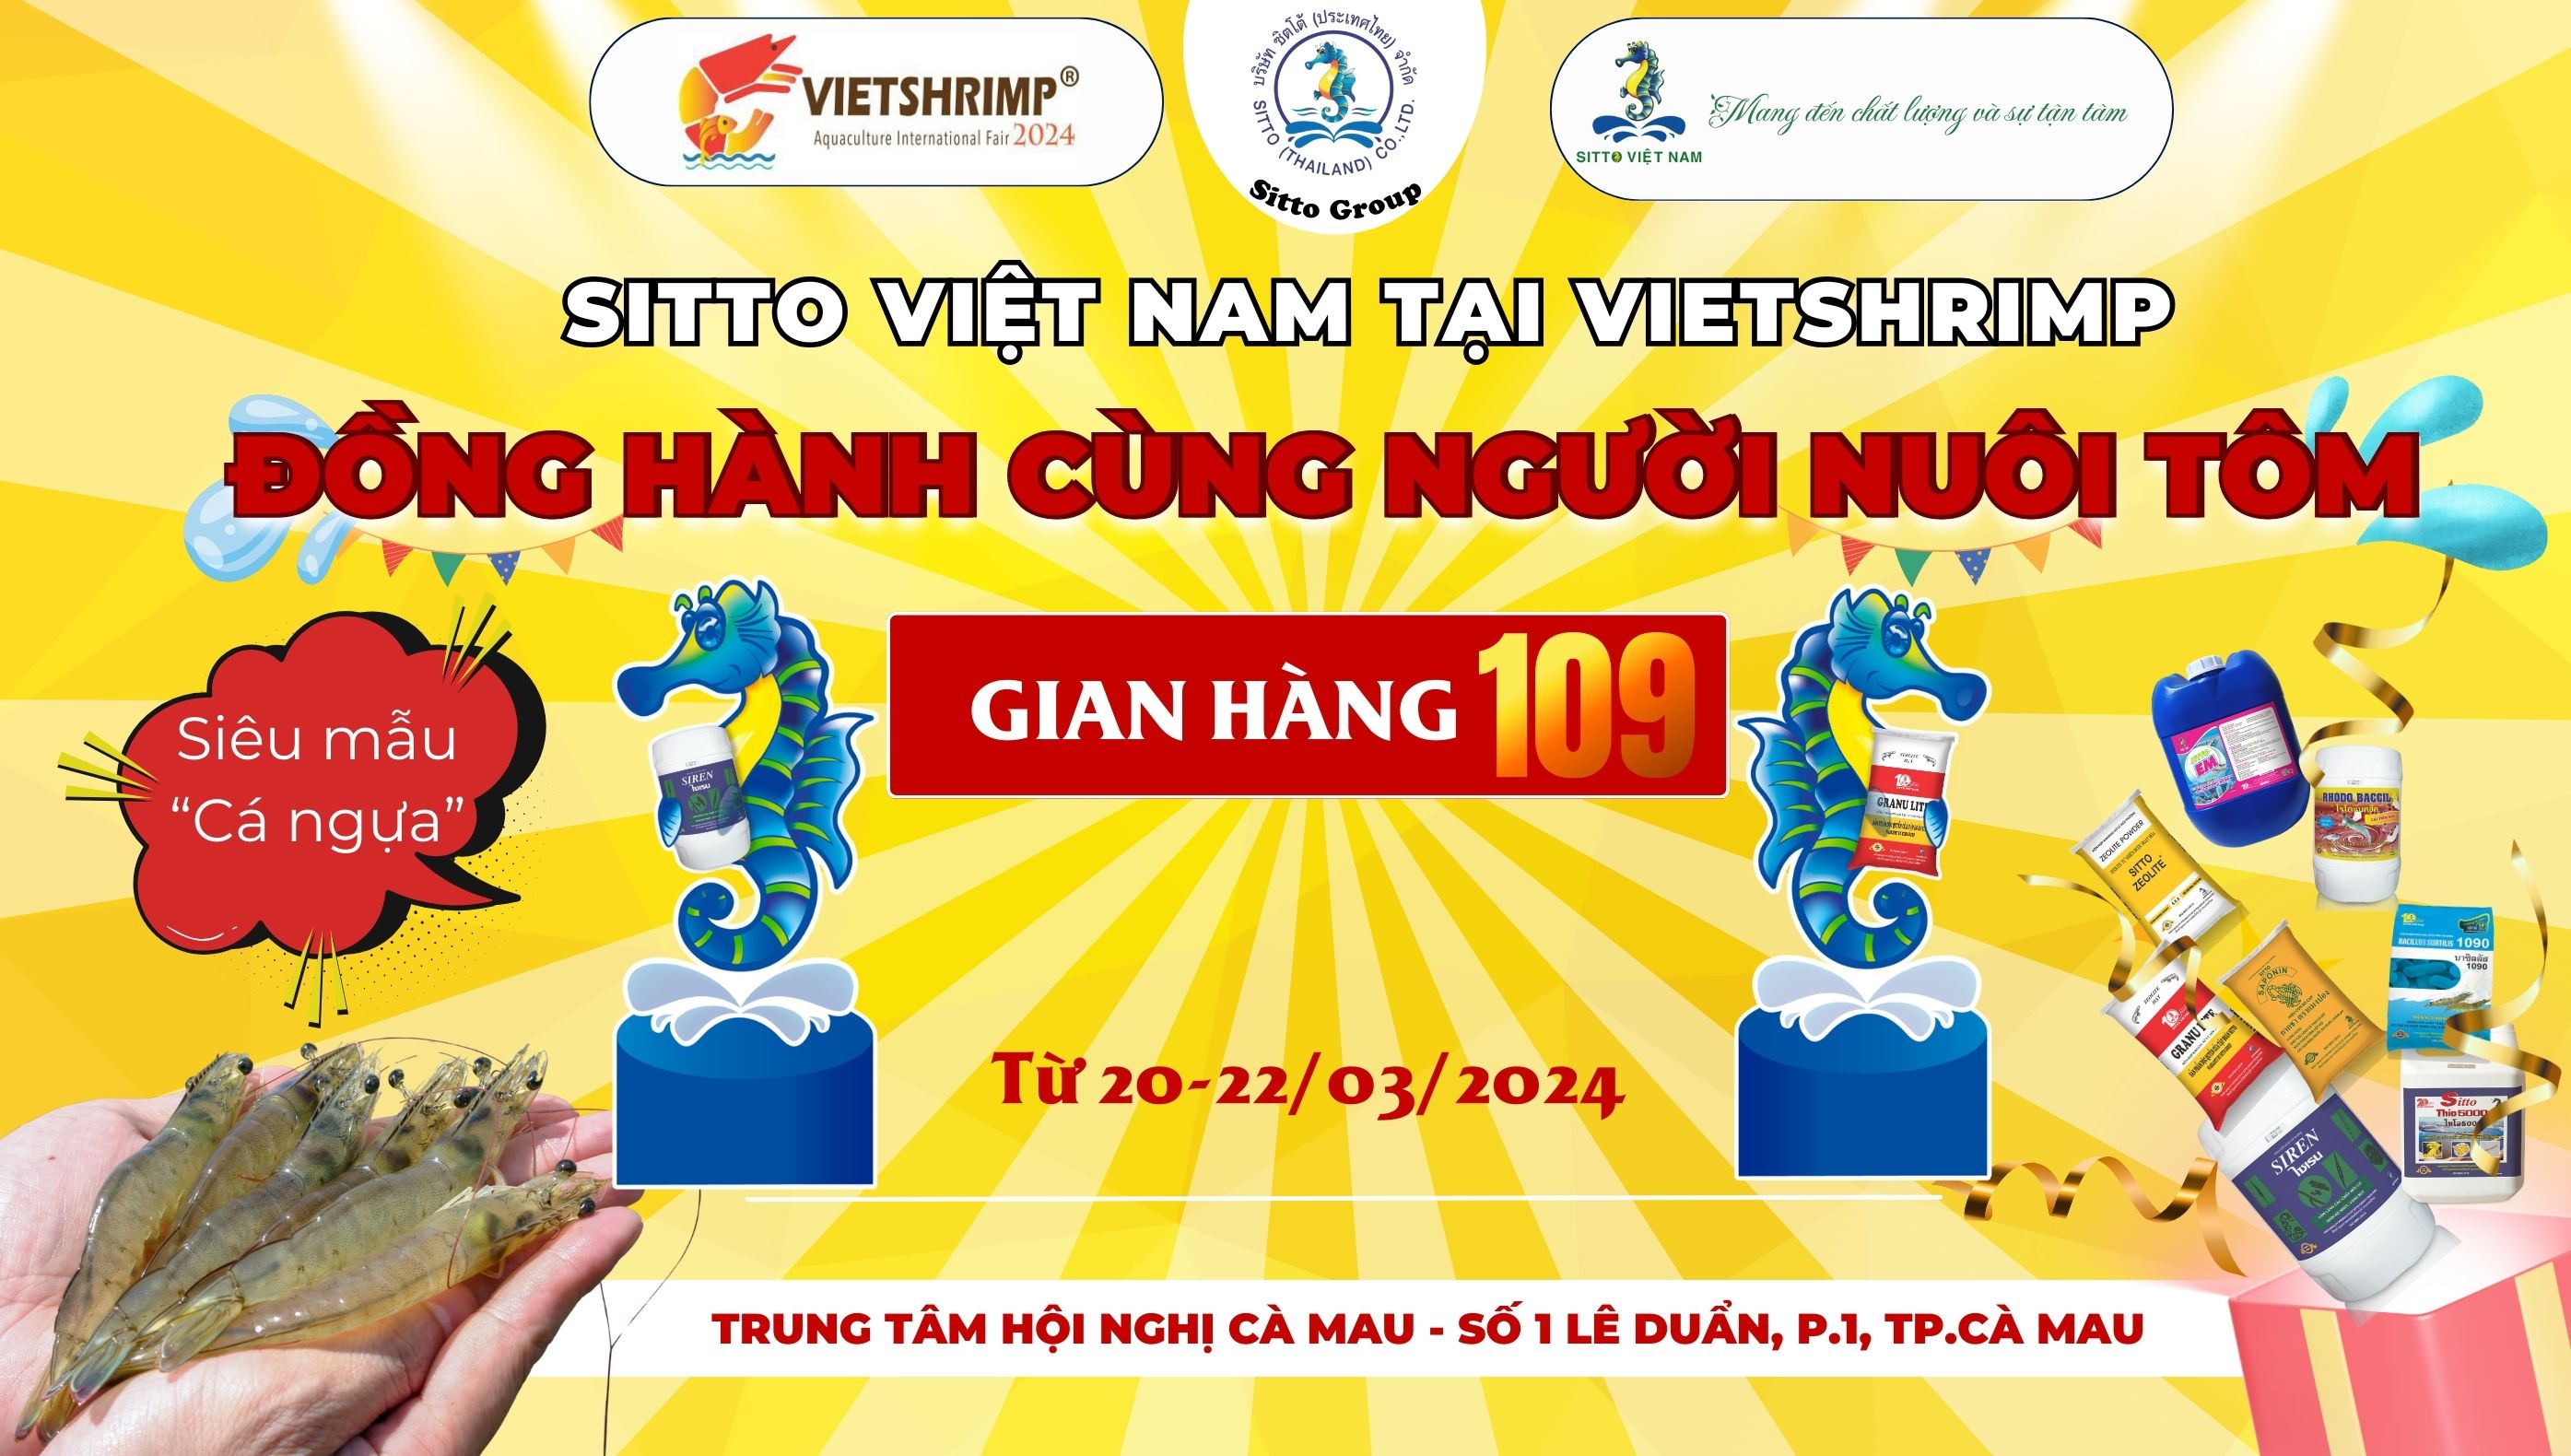 Hướng dẫn tham gia minigame Vòng quay may mắn tại VietShrimp 2024 | Sitto Việt Nam